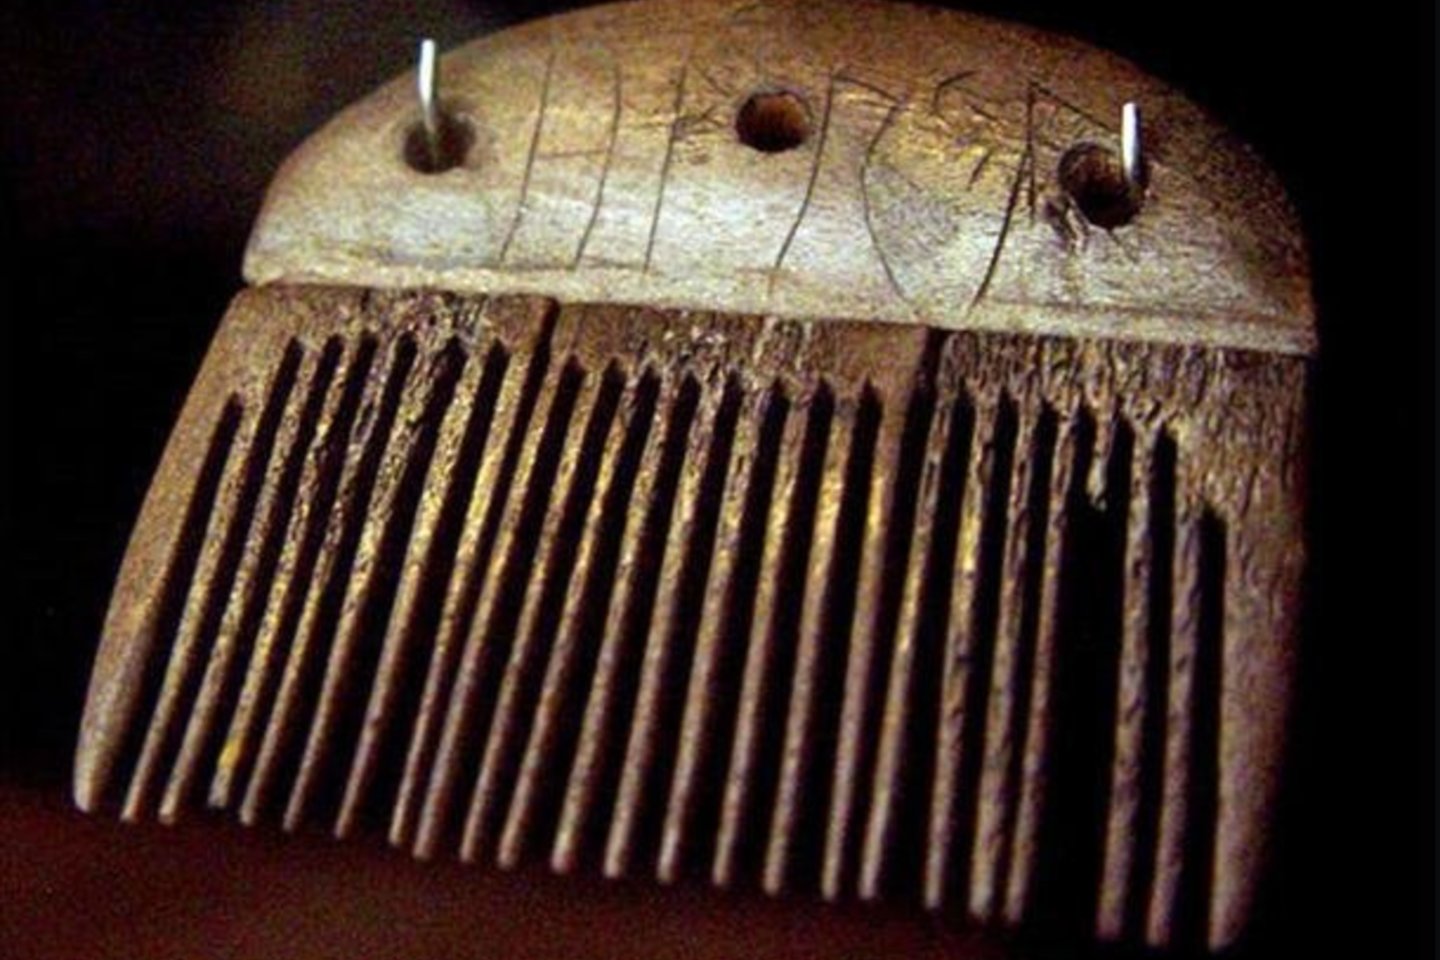  Seniausias išlikęs užrašas runomis yra ant šukų.<br> Wikimedia commons